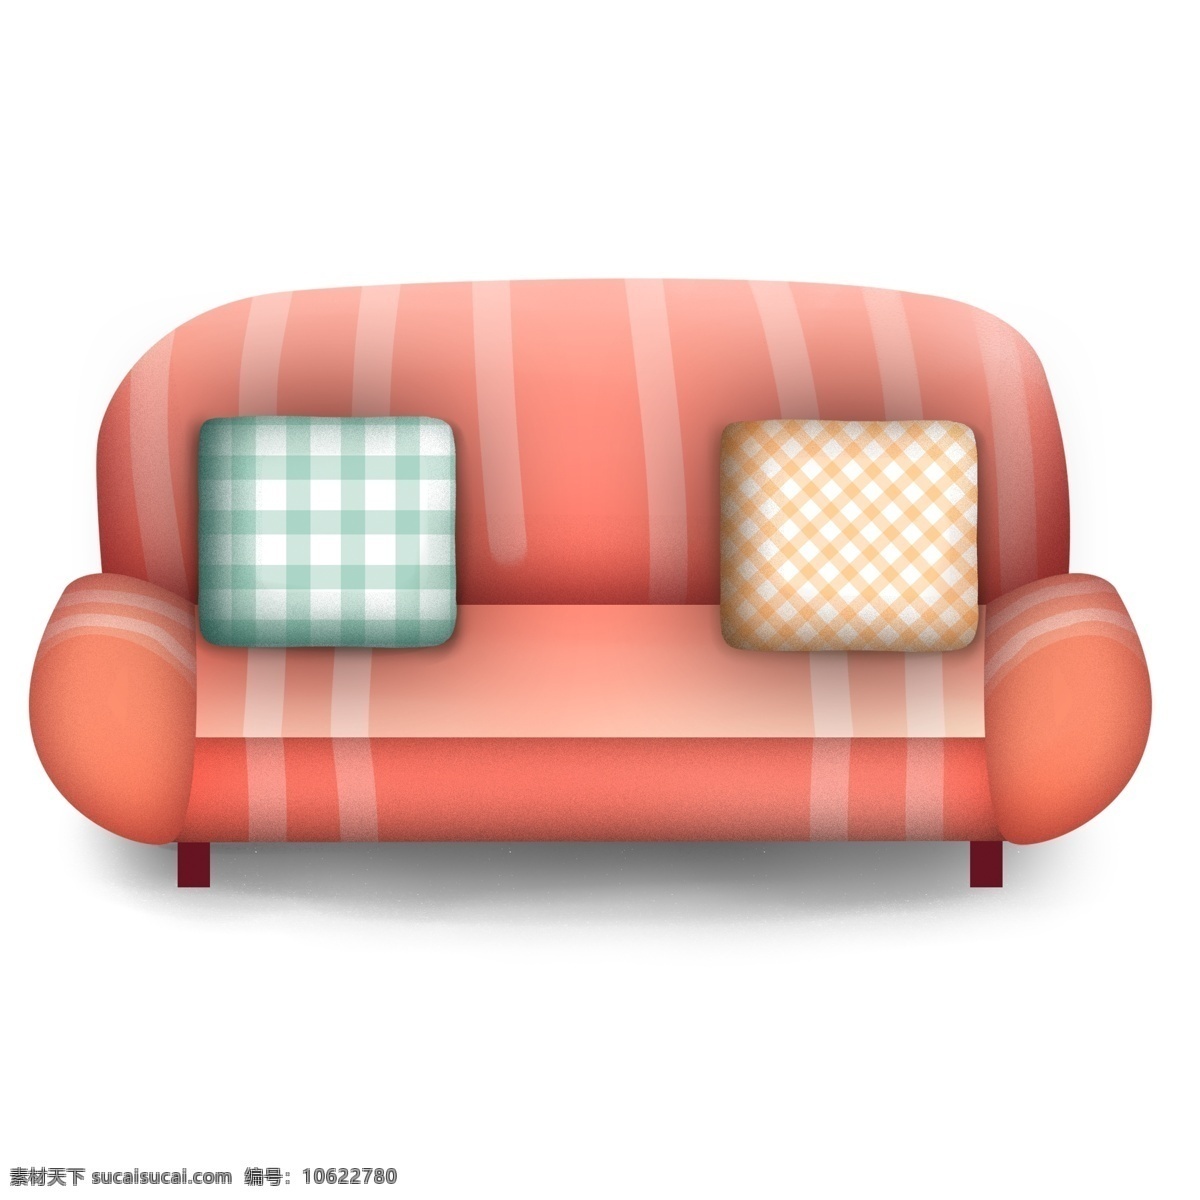 简约 红色 沙发 原创 元素 家具 设计元素 抱枕 原创元素